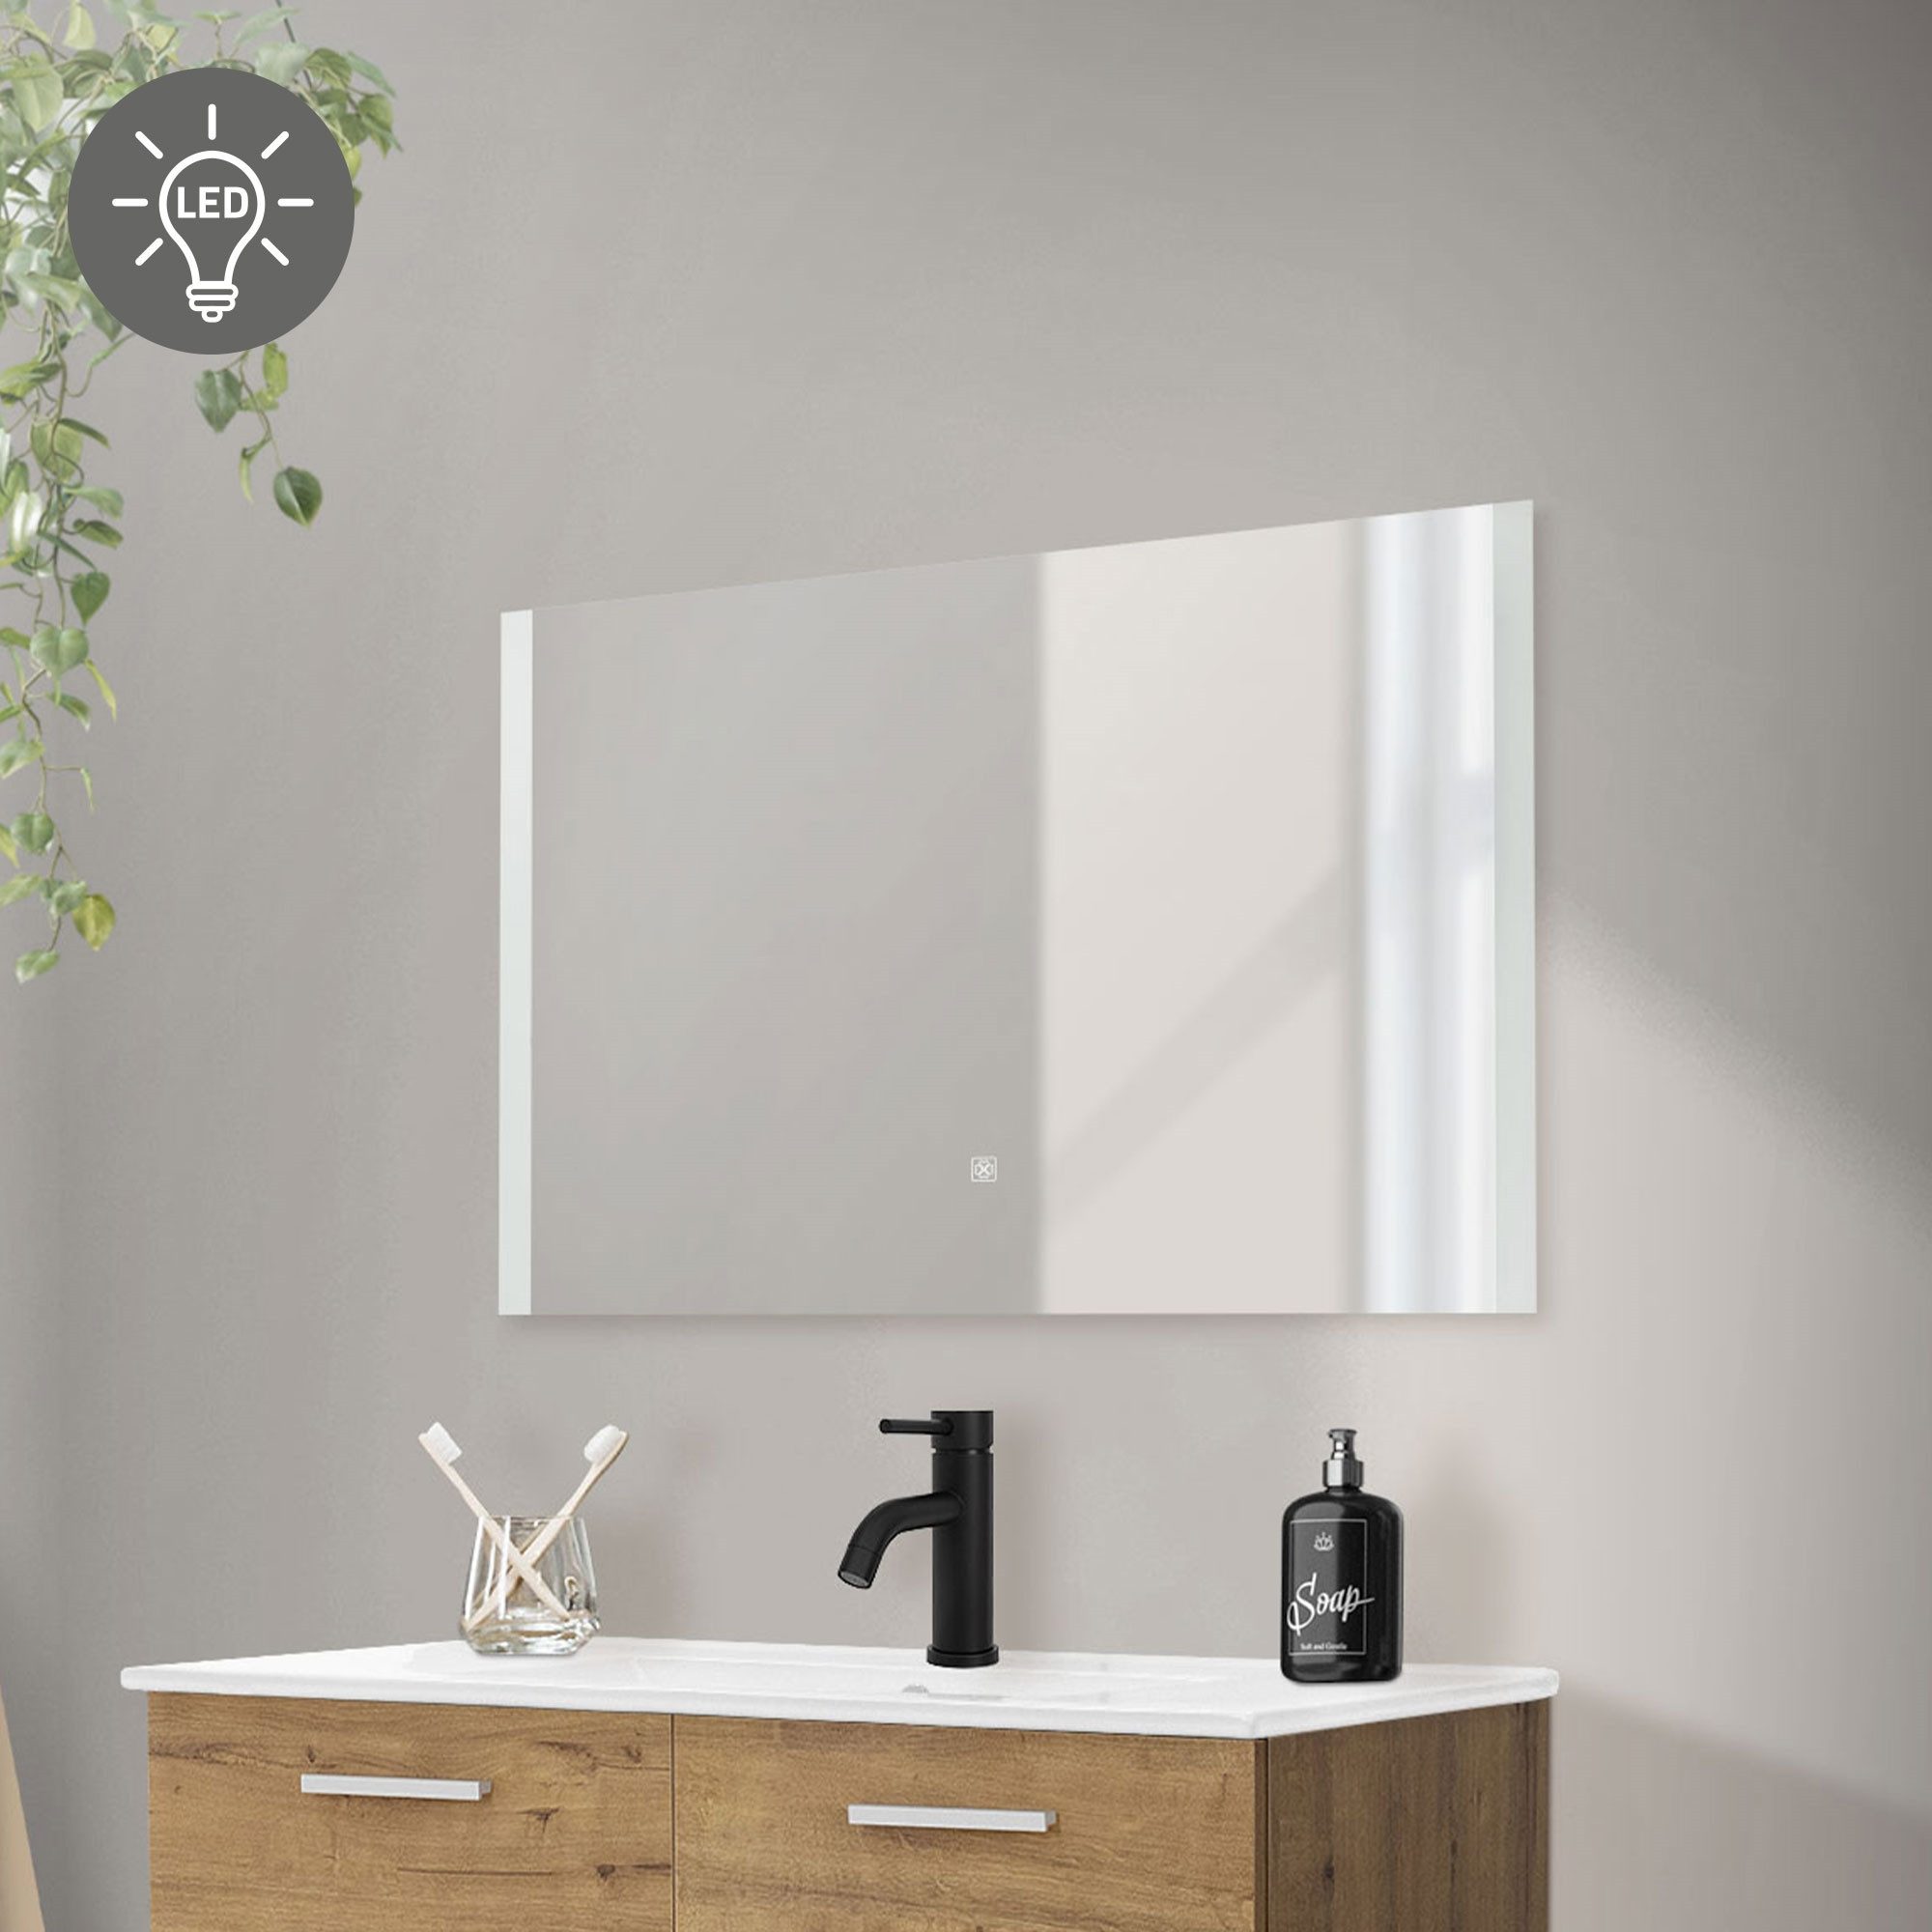 ML-DESIGN Badezimmerspiegelschrank Badezimmerspiegel aus Glas Wandmontage Deko Spiegel Badspiegel Weiß mit LED-Beleuchtung und Touchschalter 90x60cm